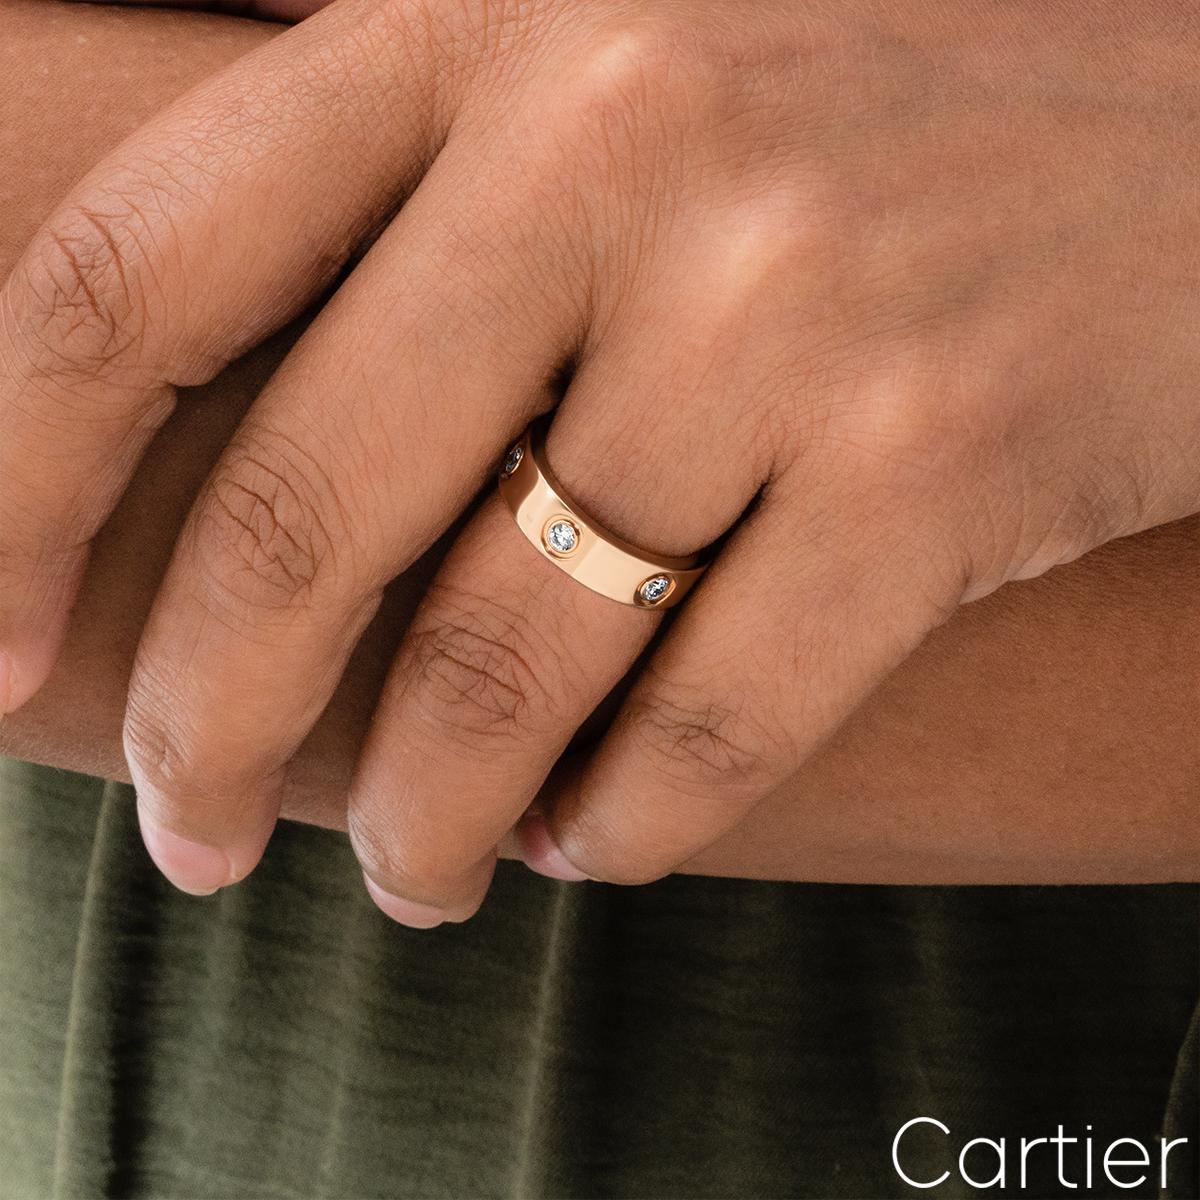 Cartier Rose Gold Full Diamond Love Ring B4097500 1